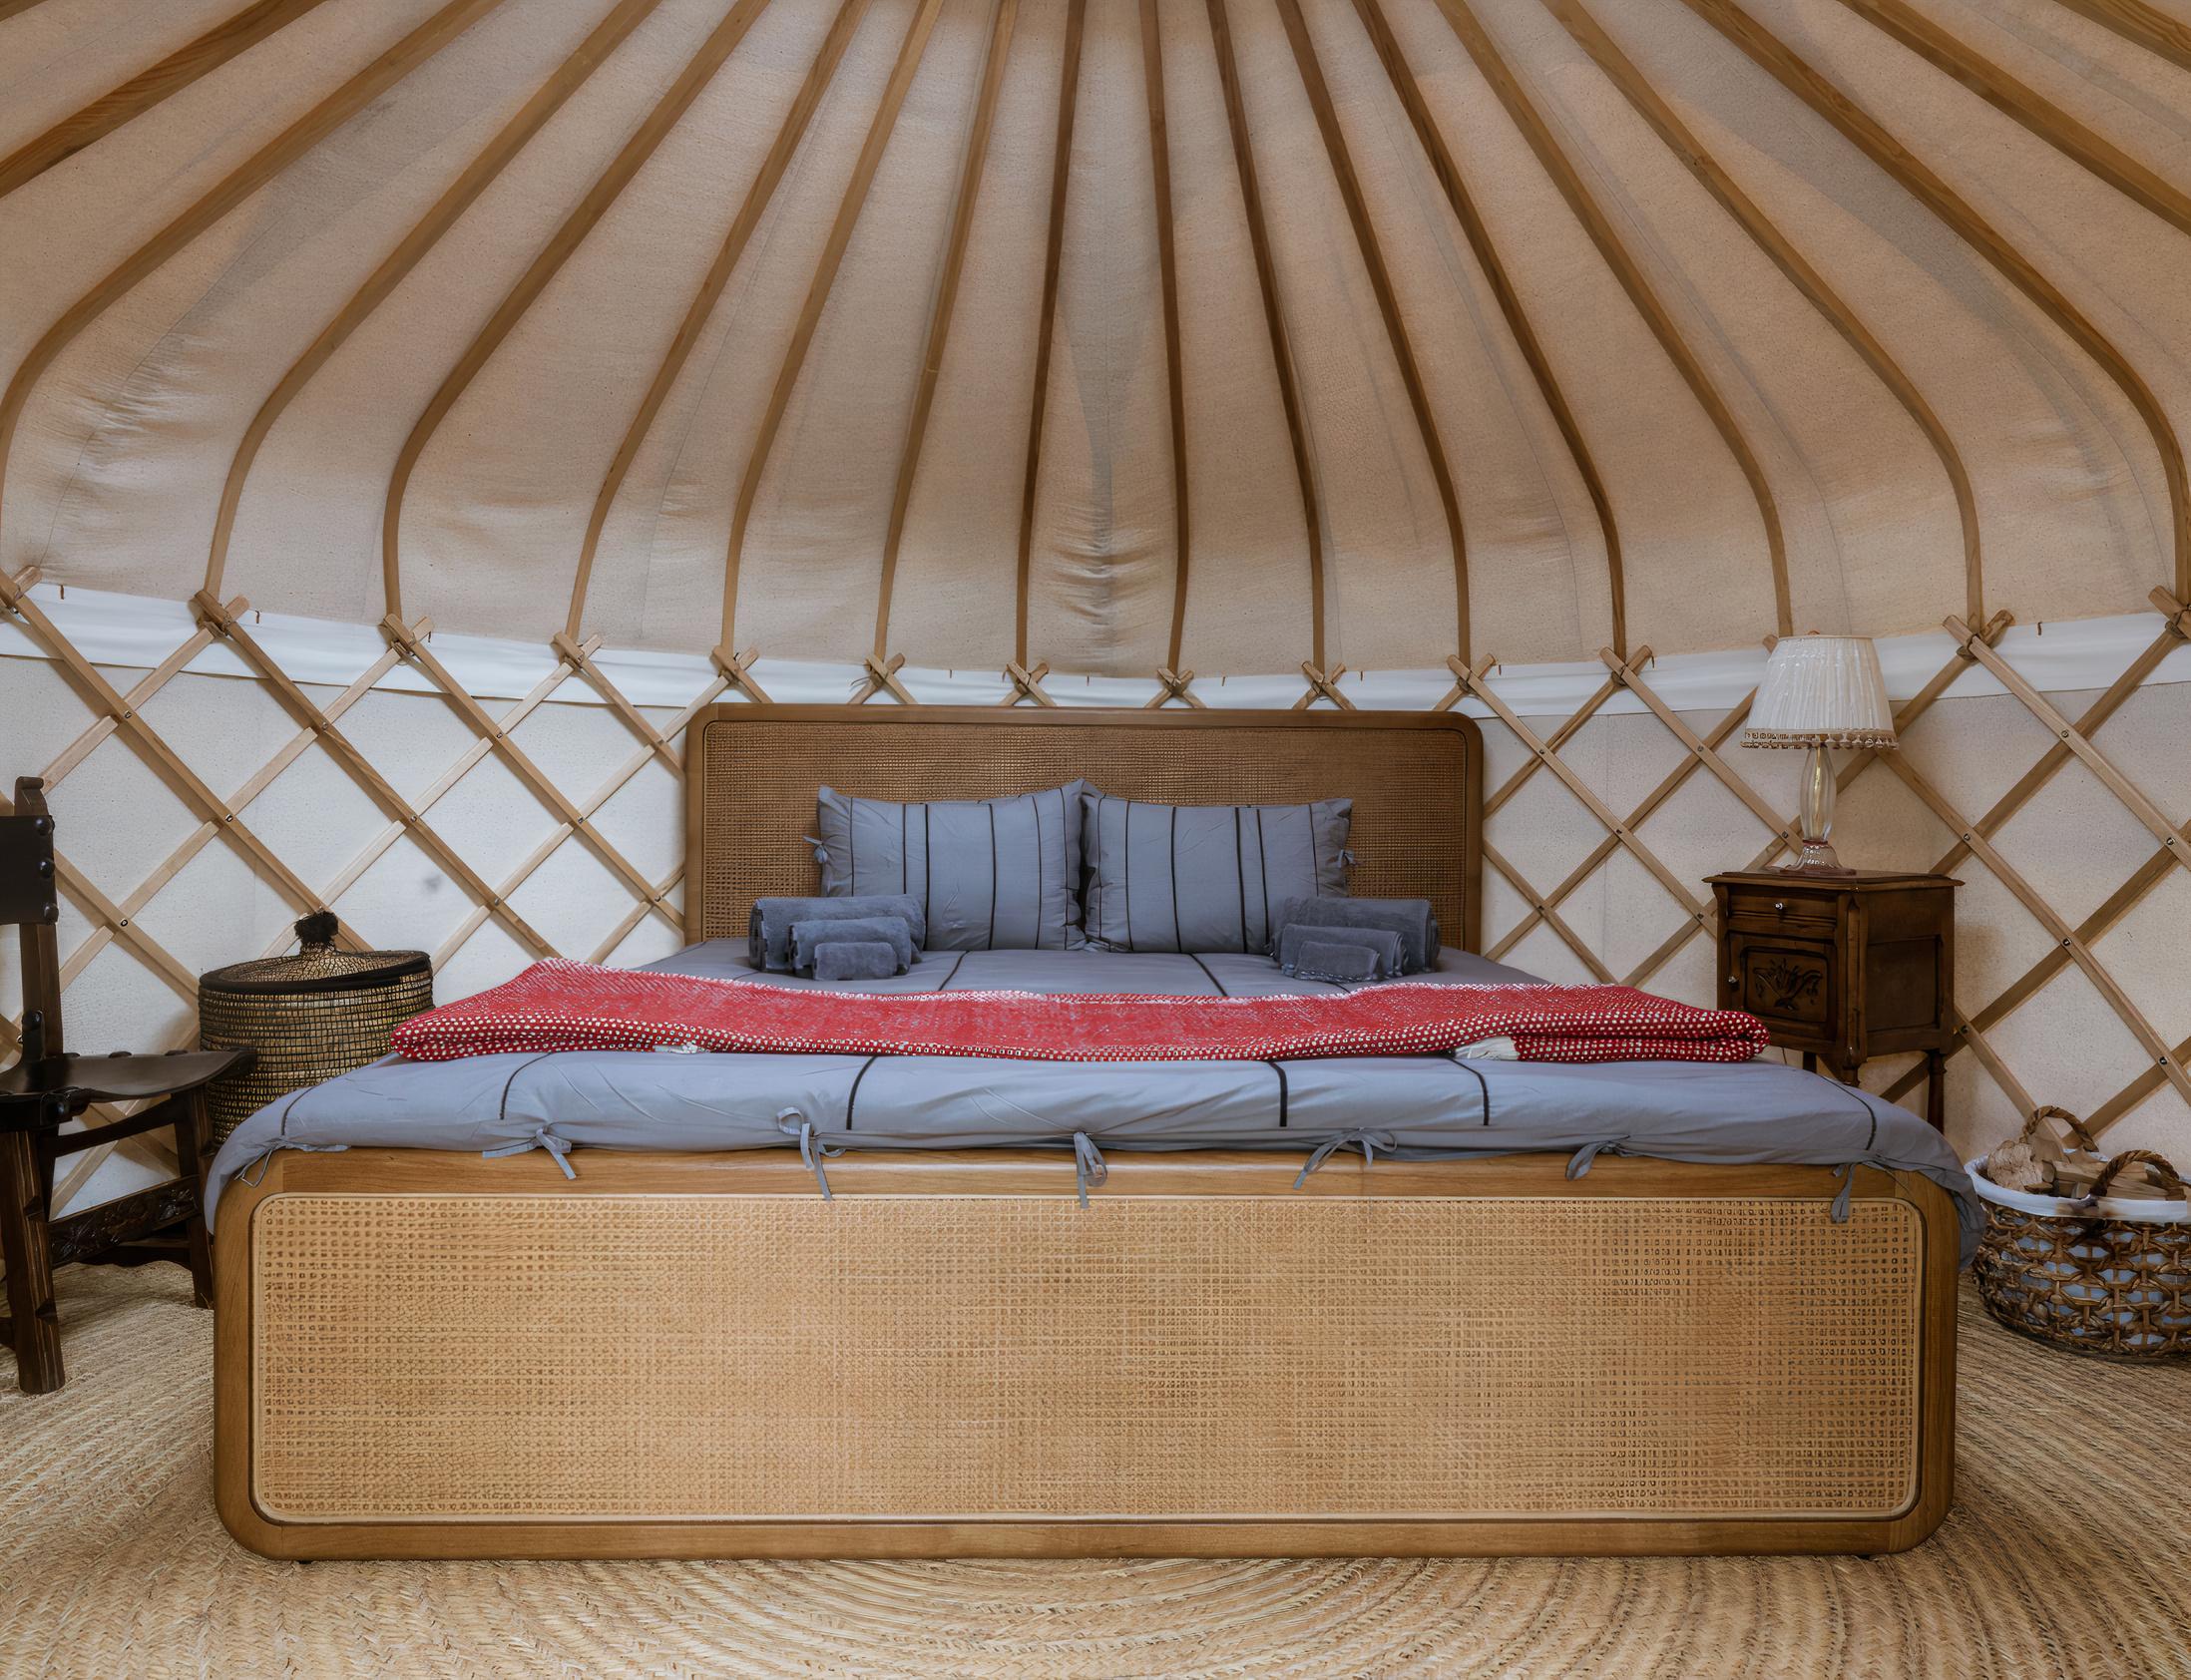 Interior de la luxury yurt.